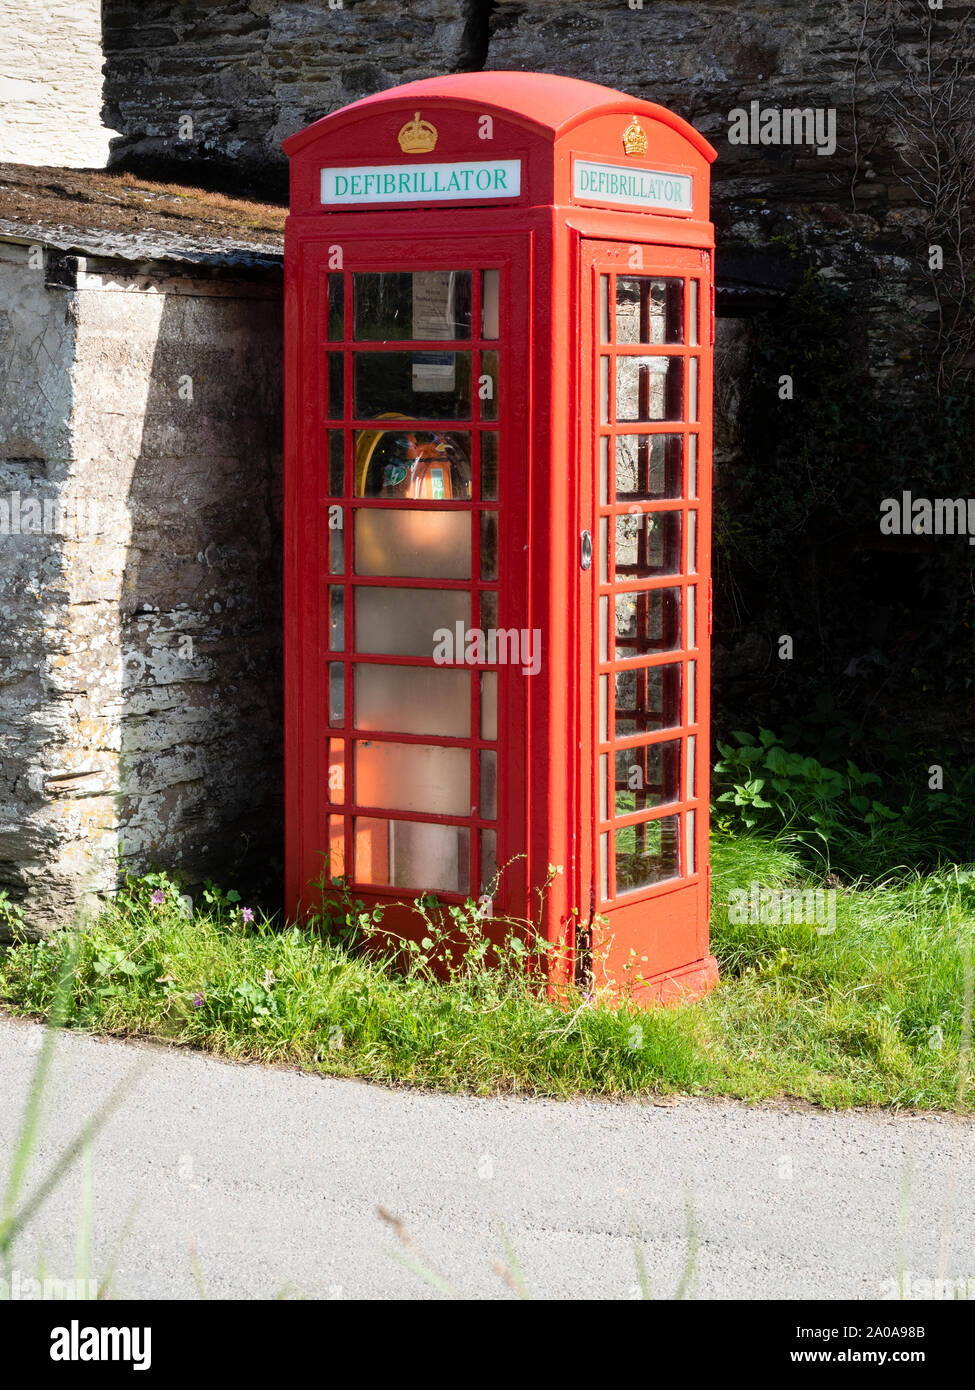 Iconic veraltete BT rote Telefonzelle umfunktionierte ein defibrillator in einer Devon Lane zu Haus Stockfoto